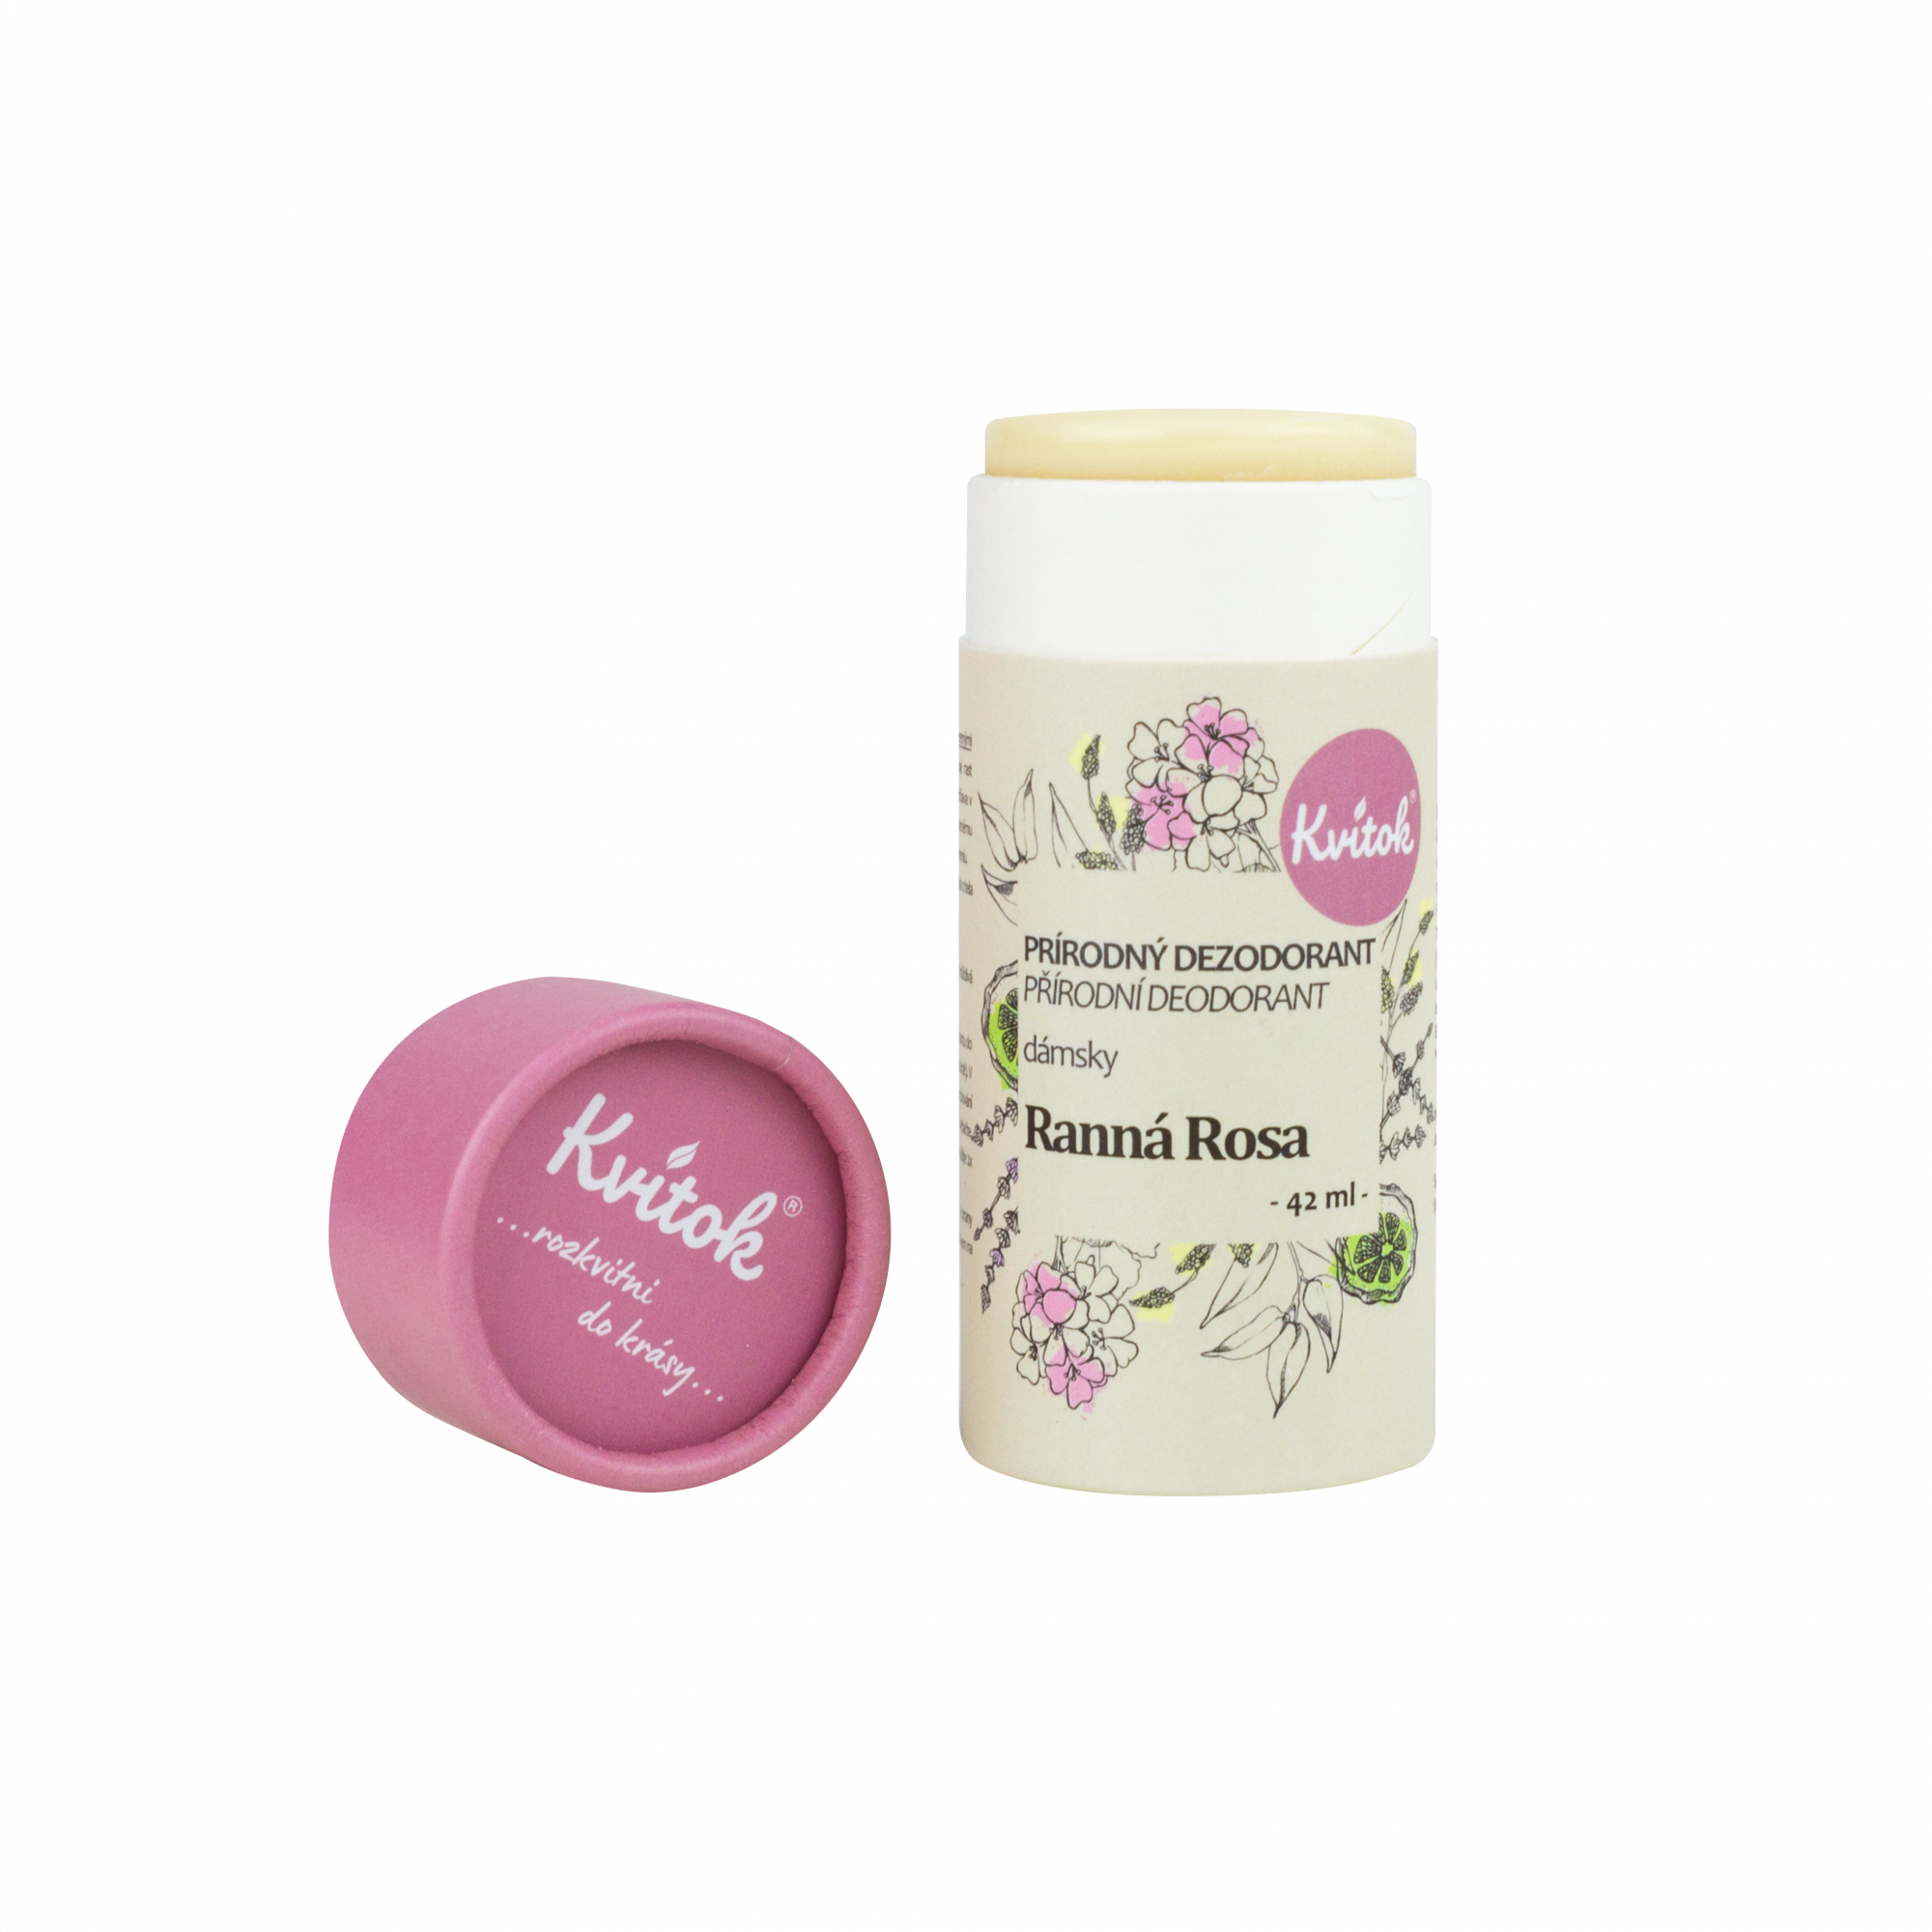 Kvitok Tuhý deodorant Ranní rosa (42 ml) - účinný až 24 hodin Kvitok